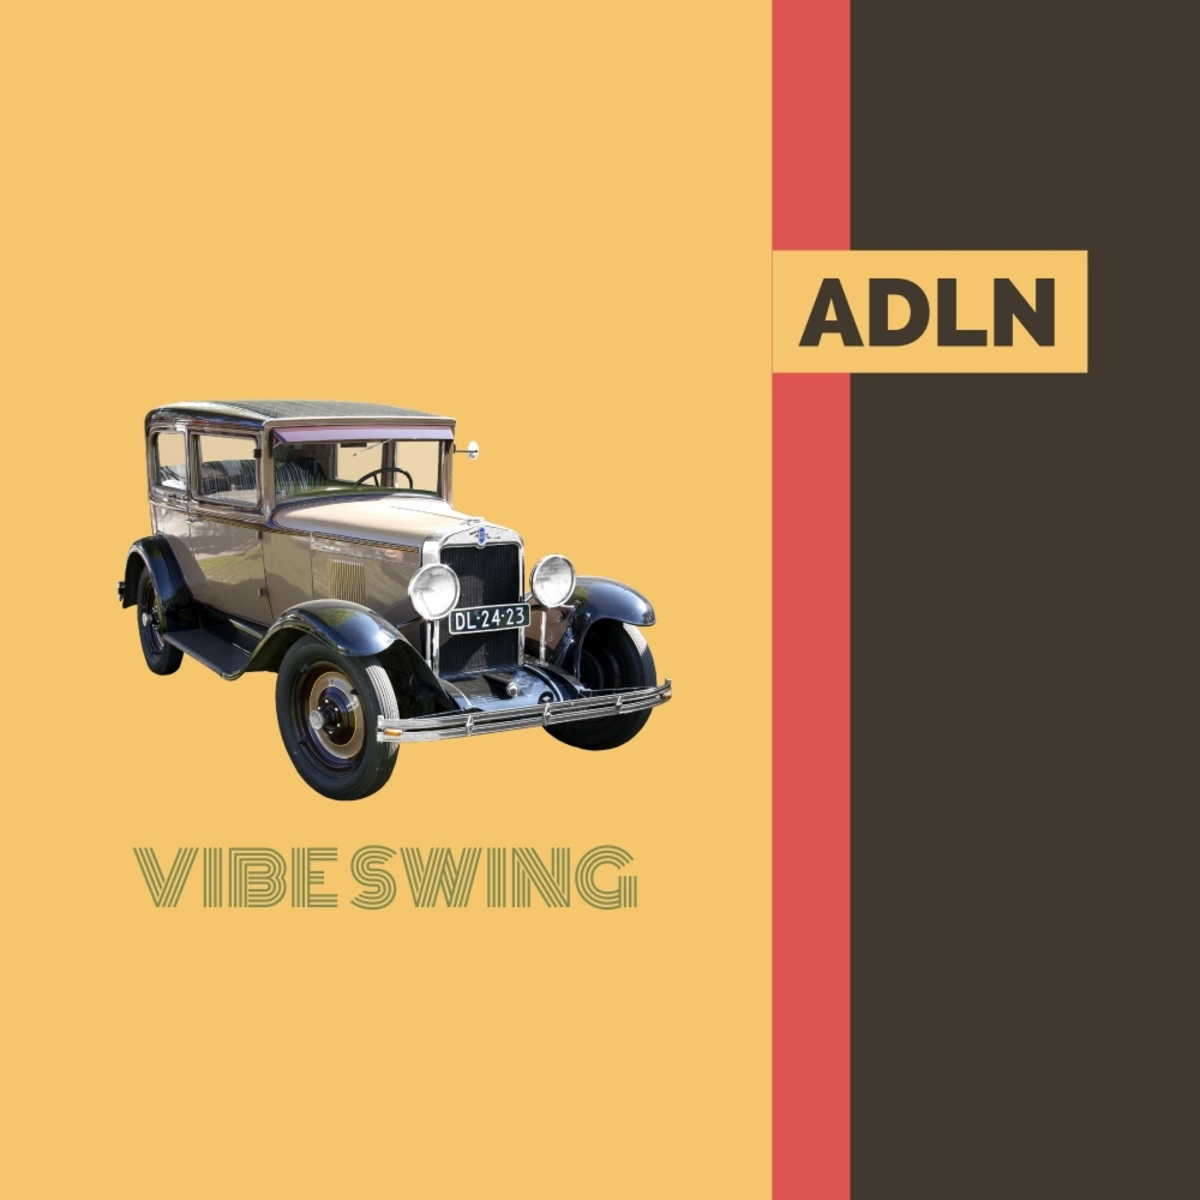 Adln - Vibe Swing (Hey Alan! Electro Swing Mix) / MCT Luxury